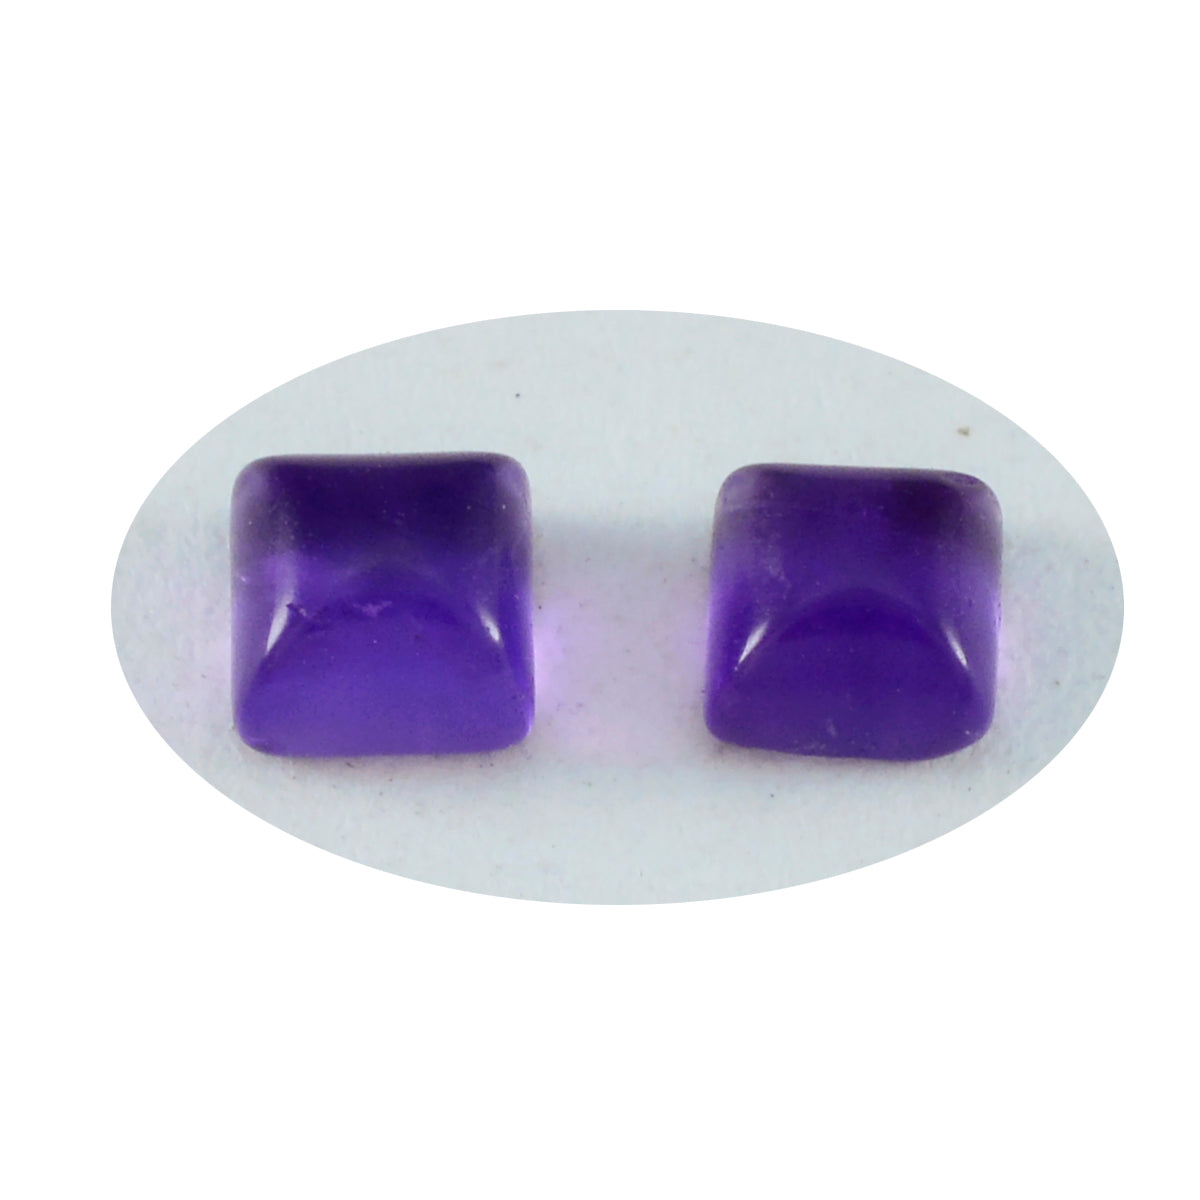 riyogems 1 шт. фиолетовый аметист кабошон 7x7 мм квадратной формы, камень привлекательного качества